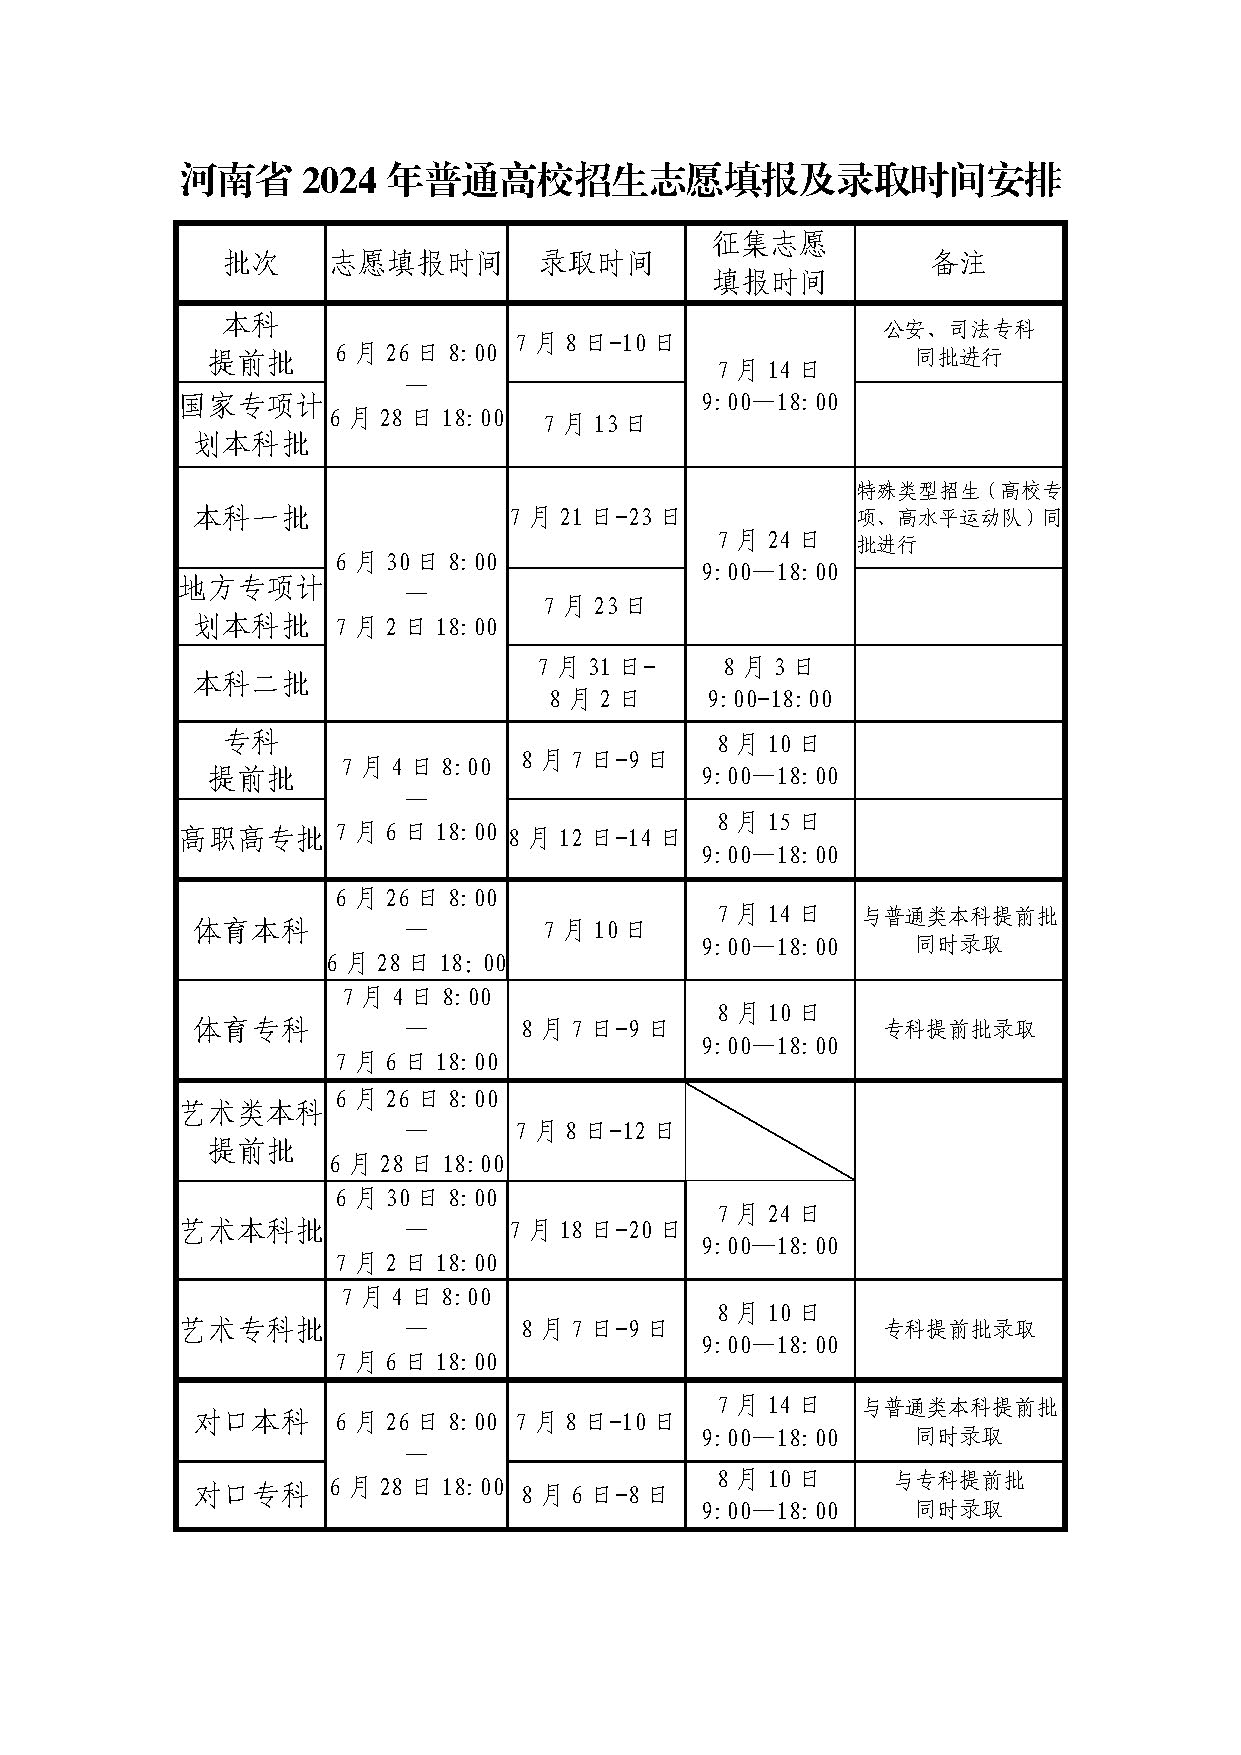 河南省高考成绩明日公布 这些渠道可查分